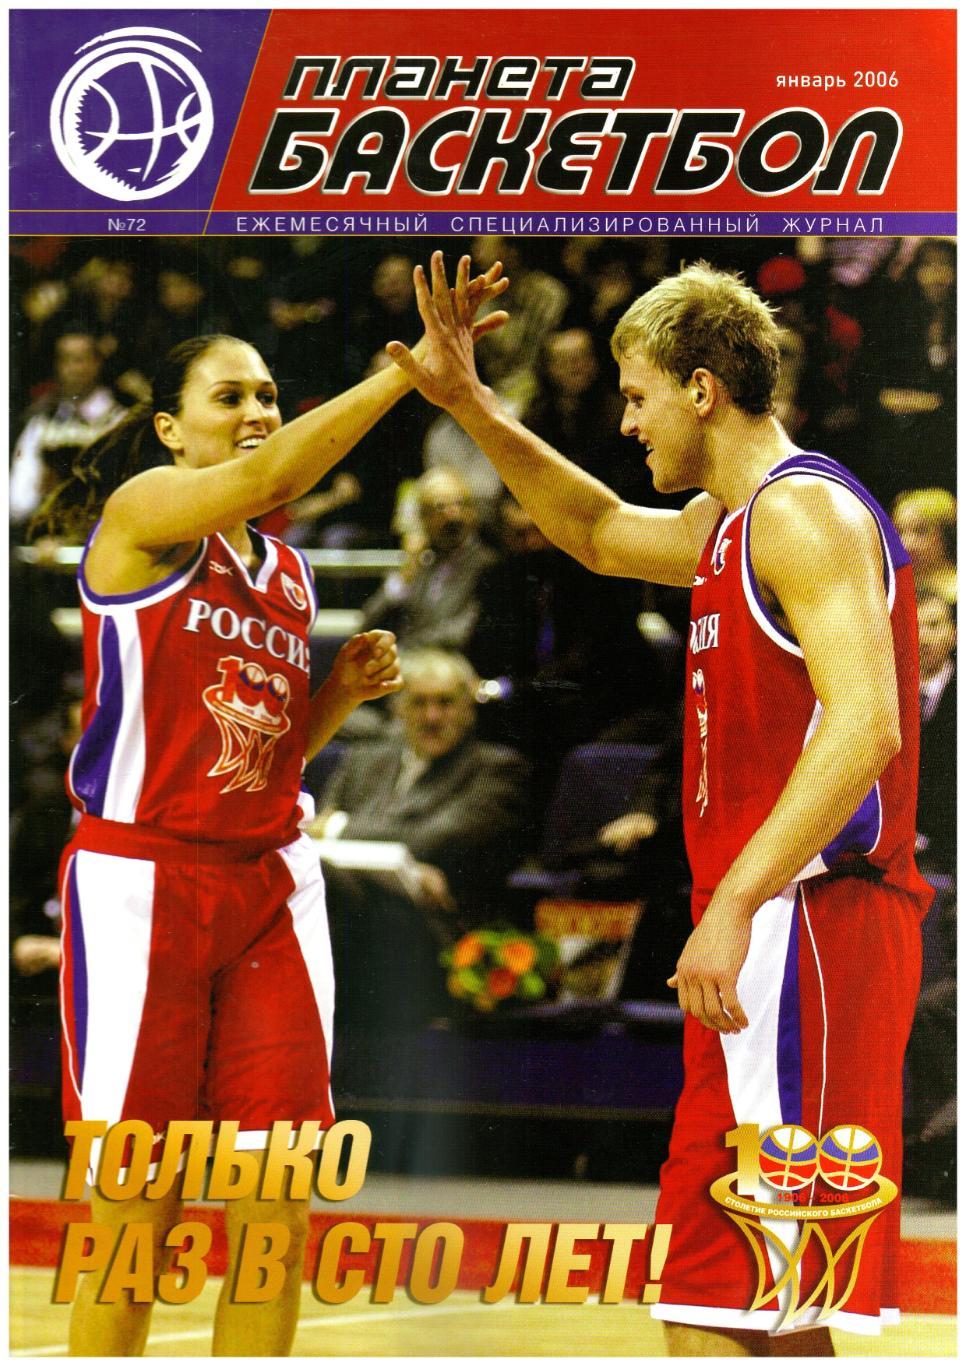 Планета Баскетбол №72 2006 Январь 100 лет баскетболу России Лауреаты сезона-2006